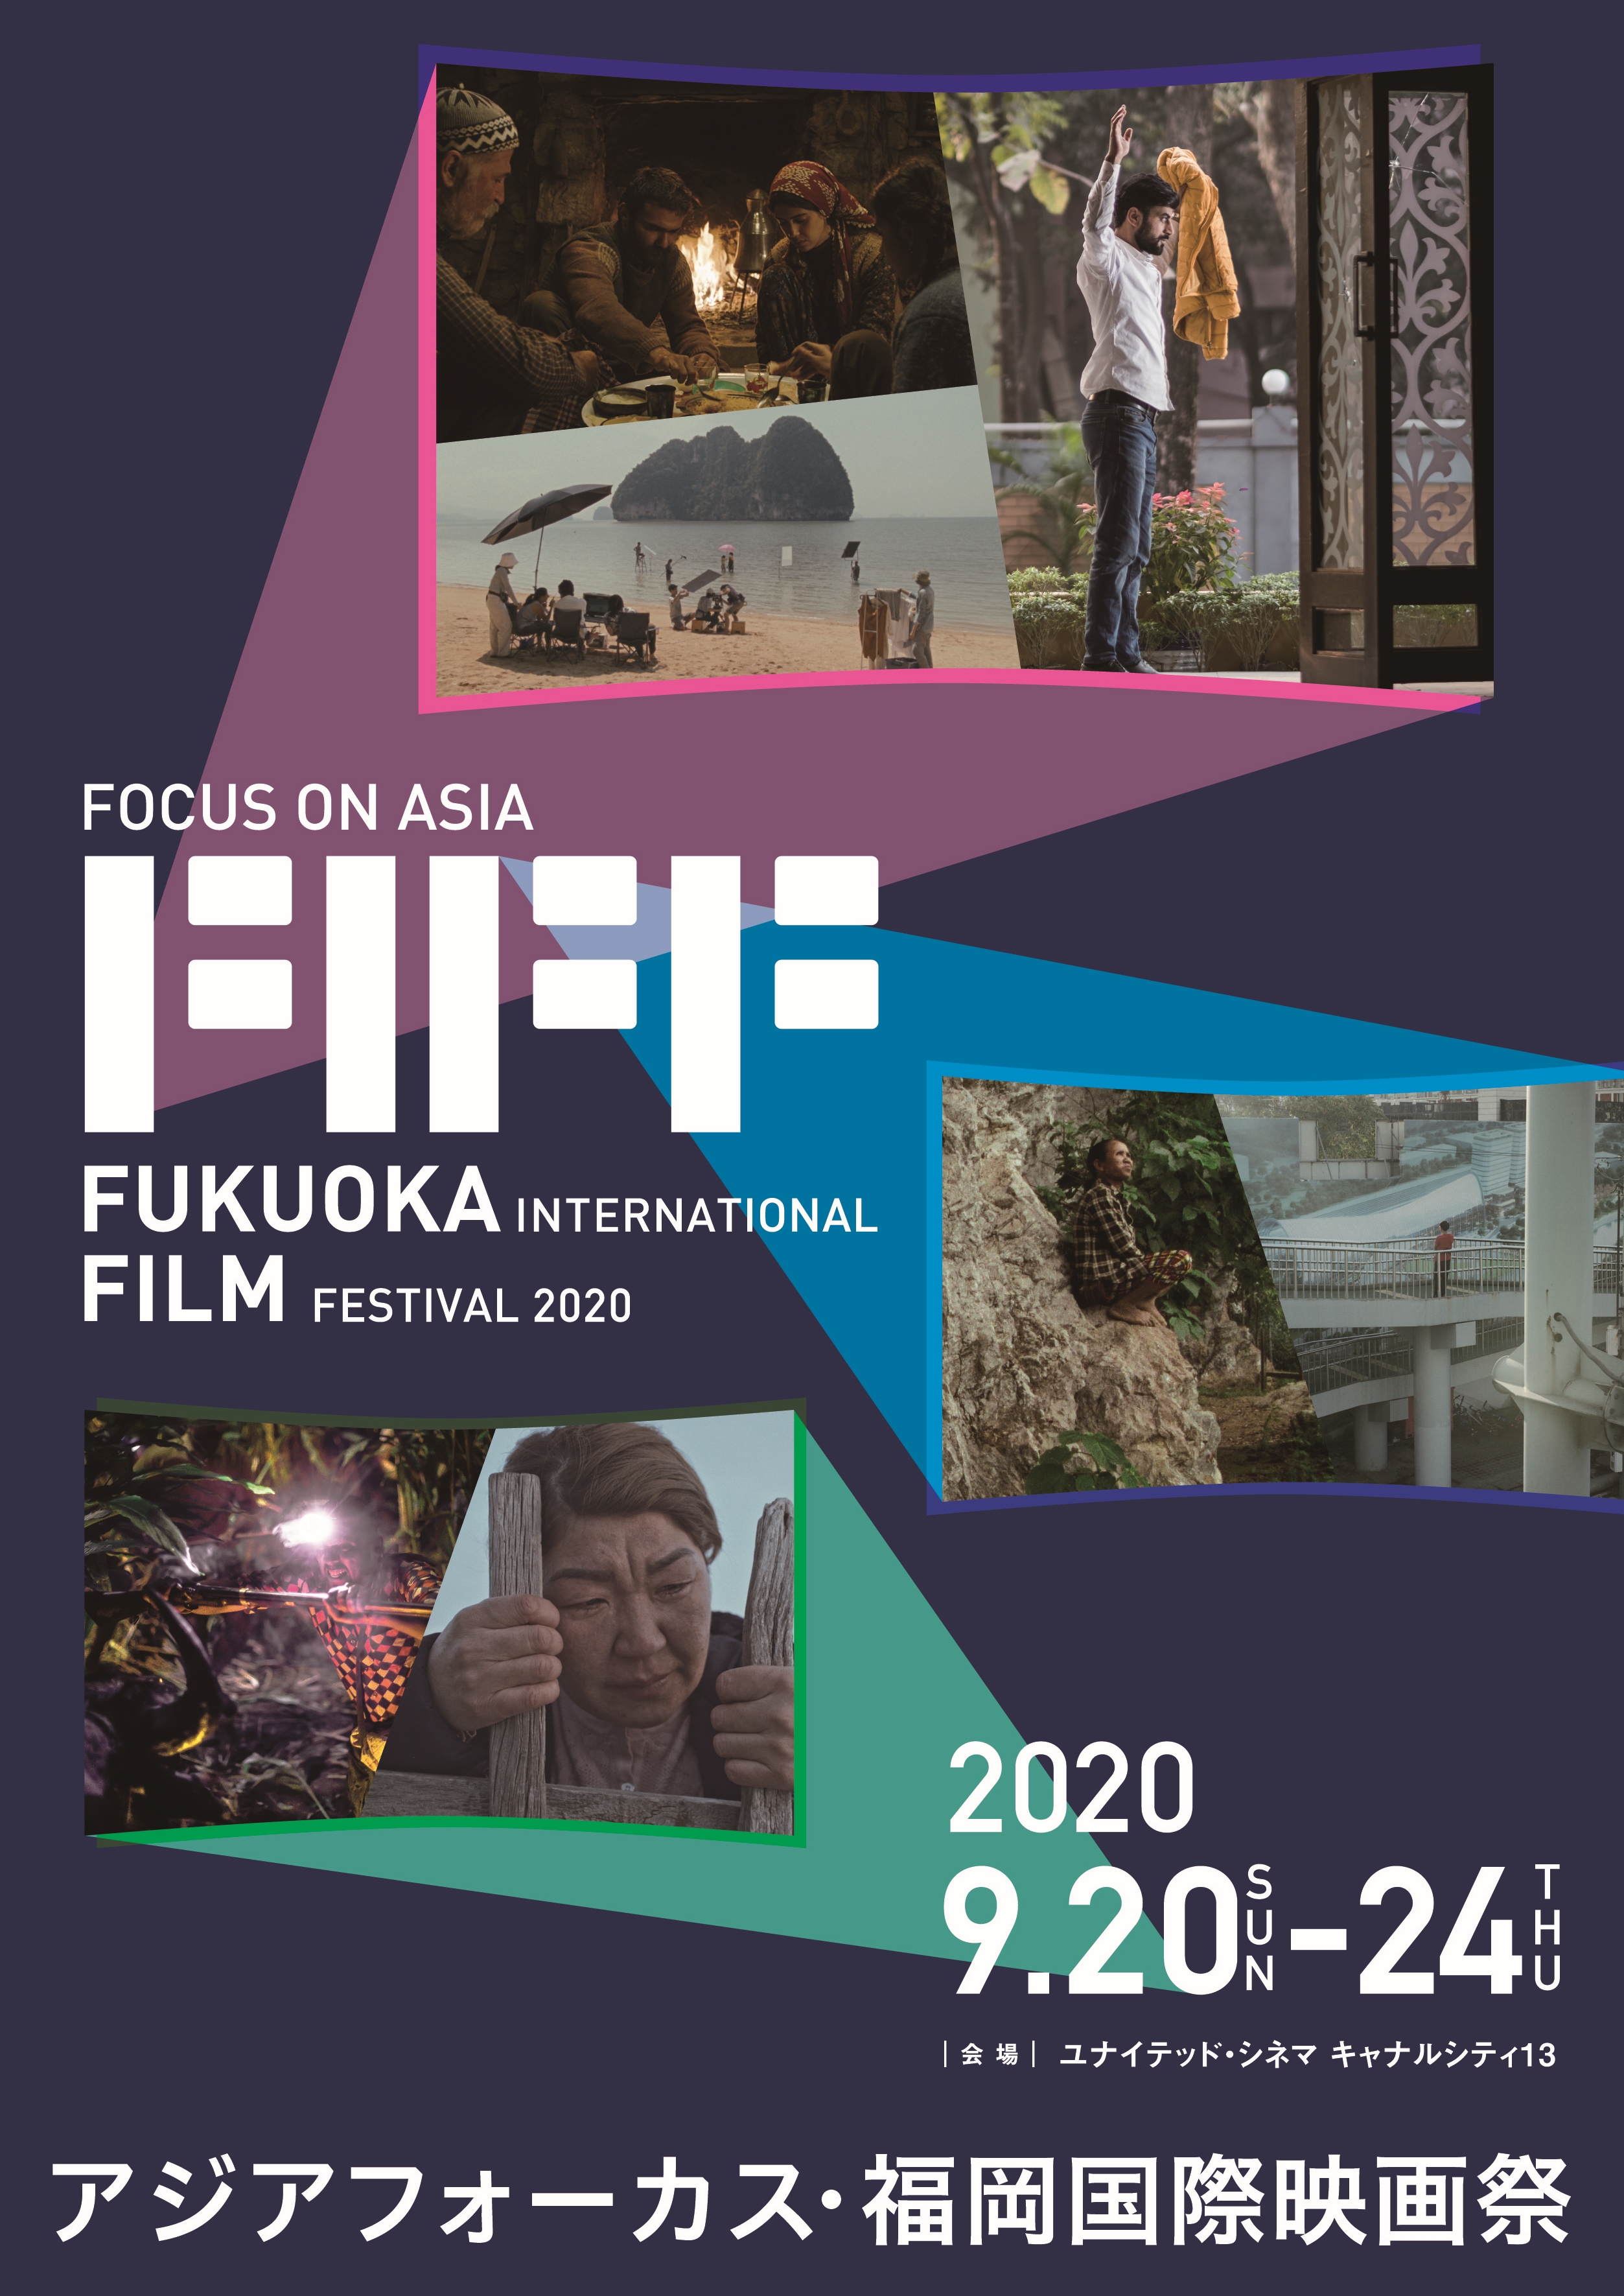 アジアフォーカス 福岡国際映画祭 開催決定 アジアの新作 話題作などカ国 地域から22作品を上映 福岡市のプレスリリース